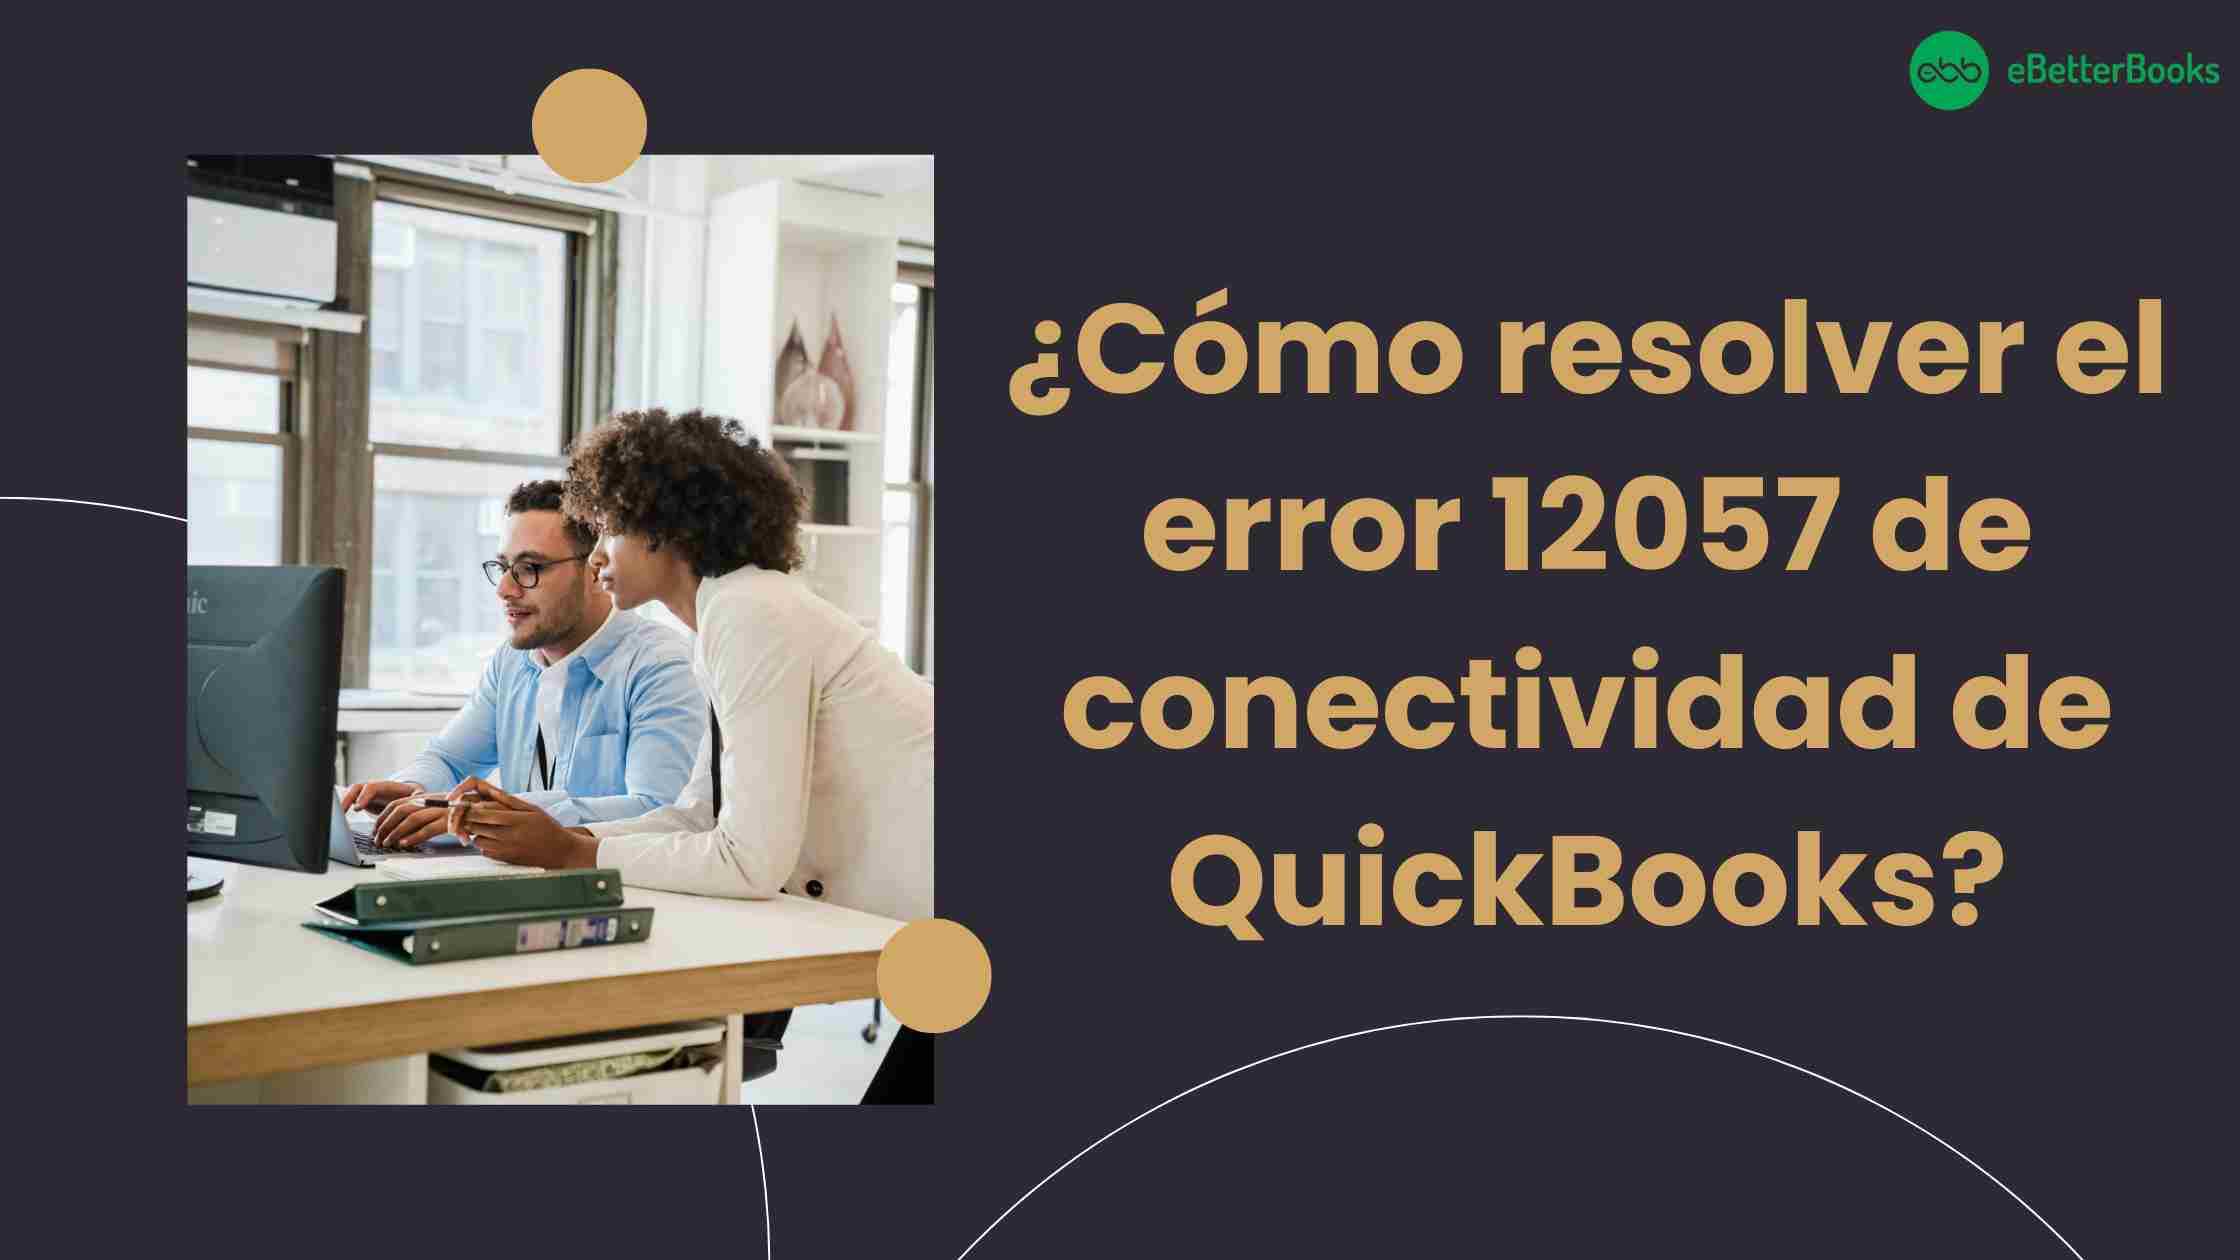 ¿Cómo resolver el error 12057 de conectividad de QuickBooks?